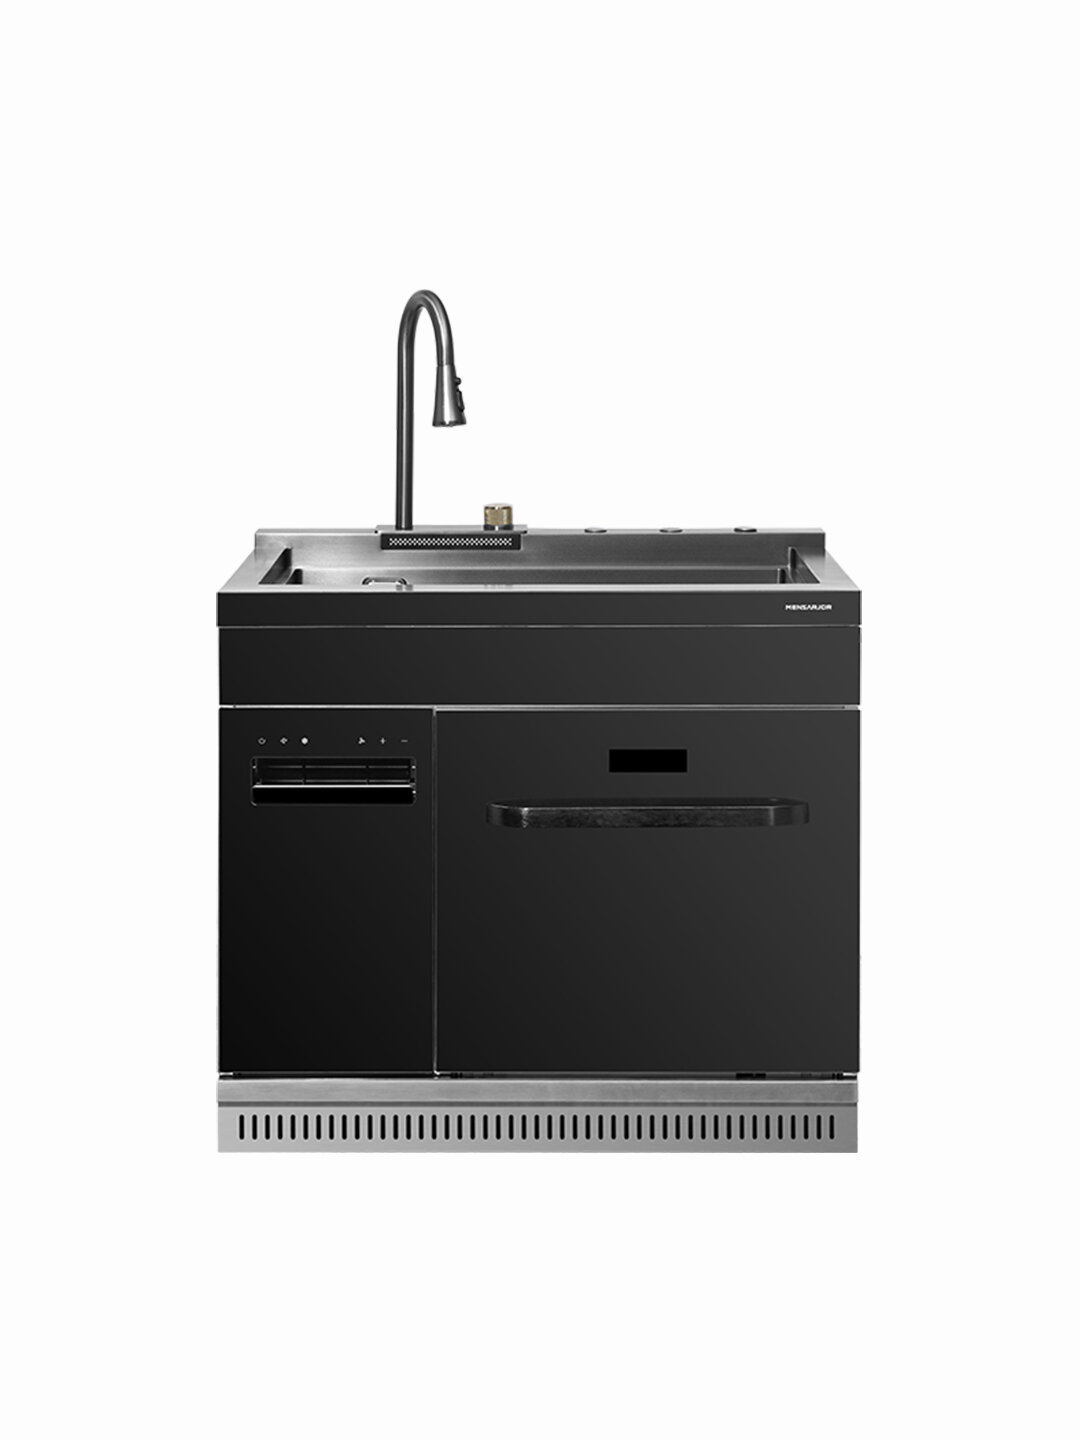 Модульная мойка с посудомоечной машиной и кондиционером Xiaomi Mensarjor Air Conditioner Integrated Sink Dishwasher 12 sets 900mm (JJS-W91-DA)